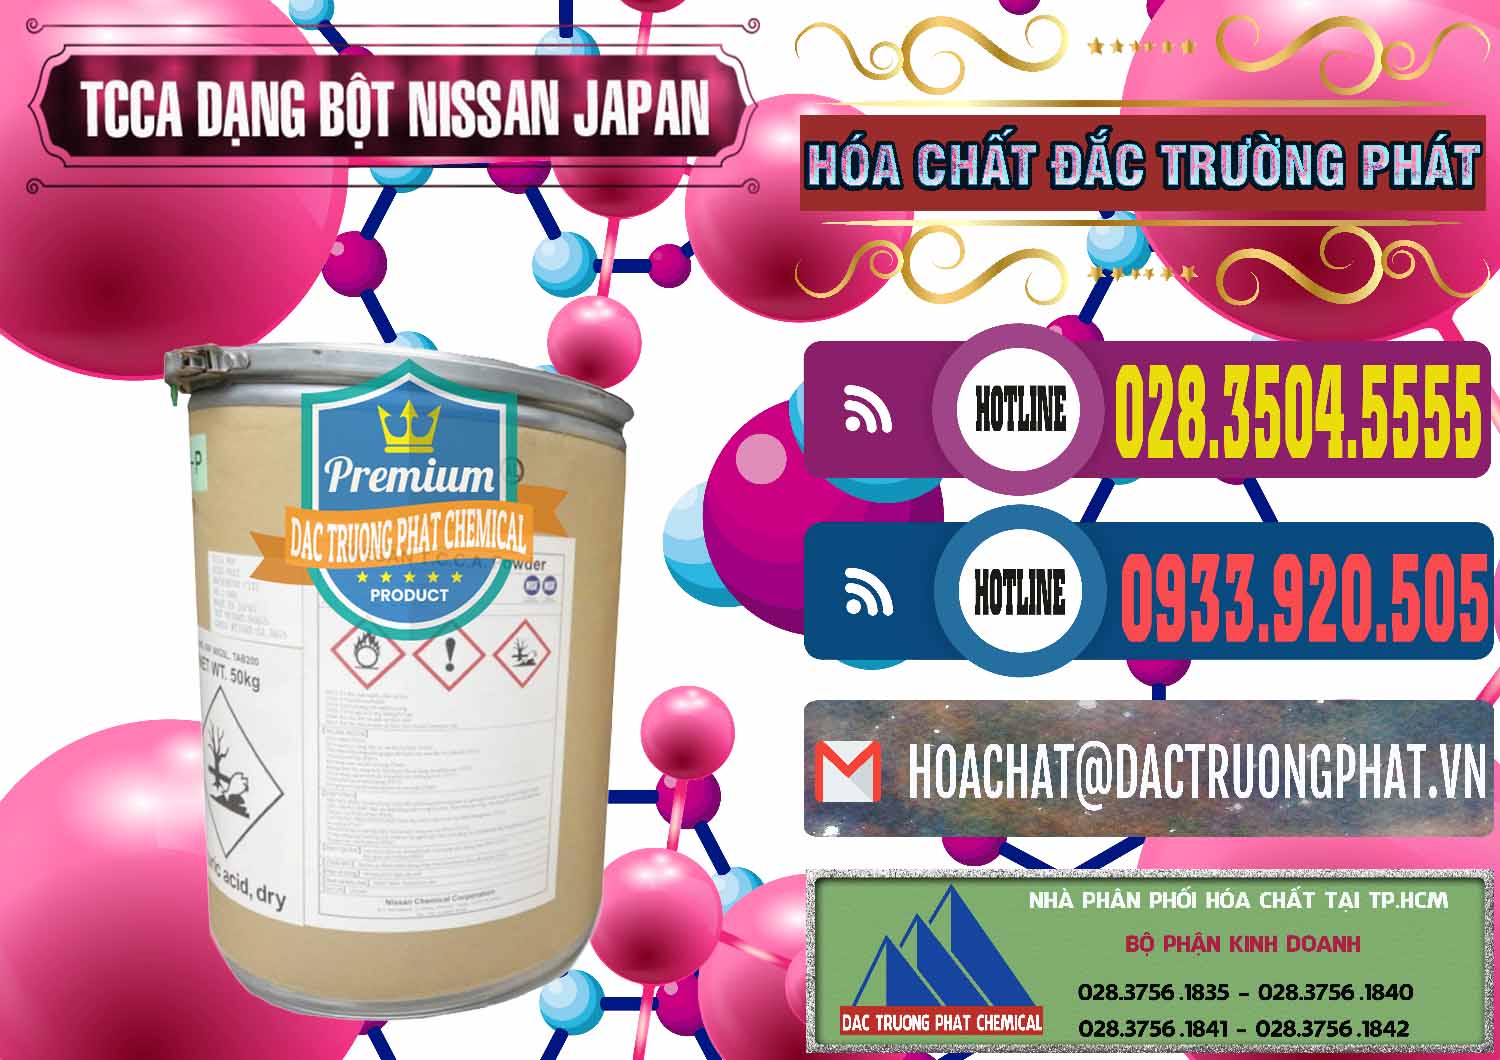 Công ty chuyên kinh doanh ( bán ) TCCA - Acid Trichloroisocyanuric 90% Dạng Bột Nissan Nhật Bản Japan - 0375 - Nơi cung cấp _ phân phối hóa chất tại TP.HCM - muabanhoachat.com.vn